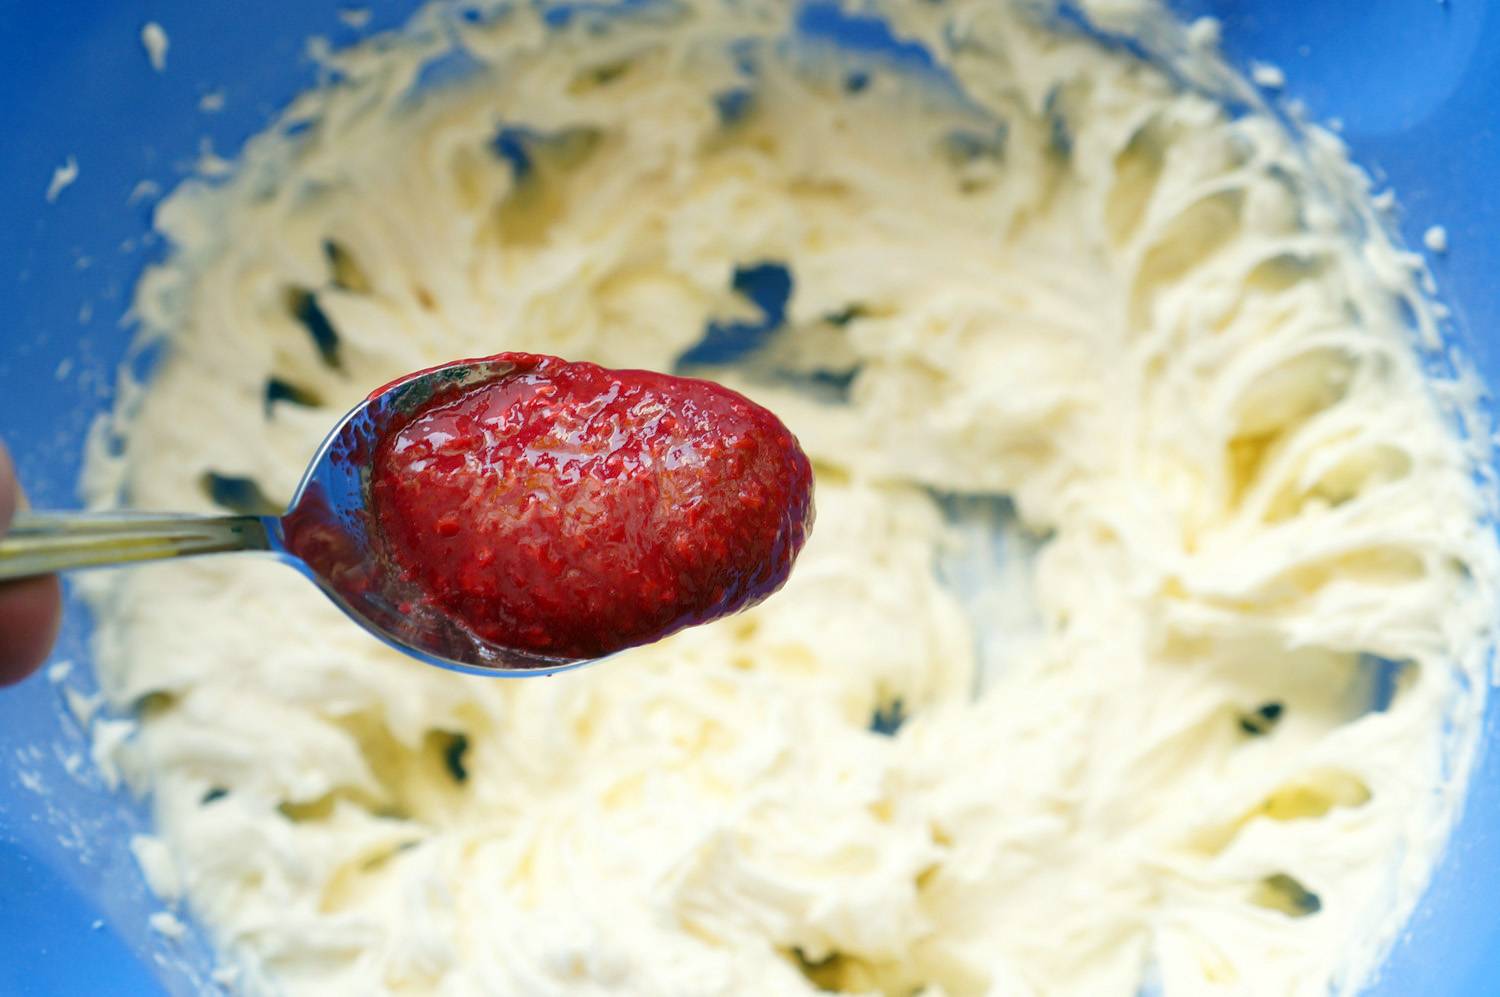 Крем на основе творожного сыра и масла для тортов и капкейков, пошаговый фото рецепт, кулинарный блог andychef.ru